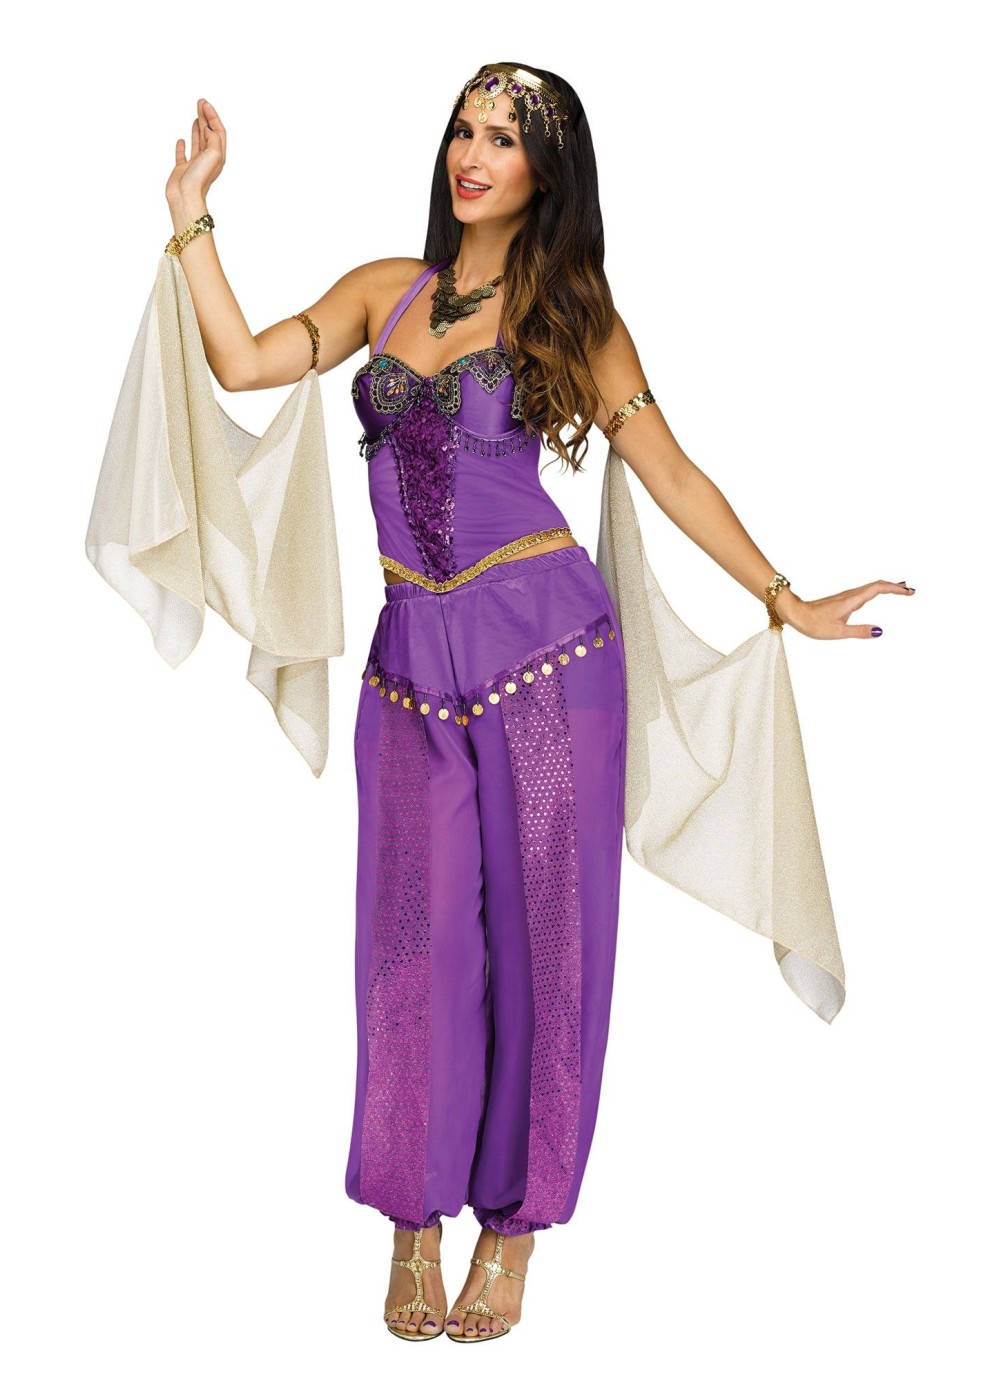 https://img.wondercostumes.com/products/17-3/genie-women-costume.jpg